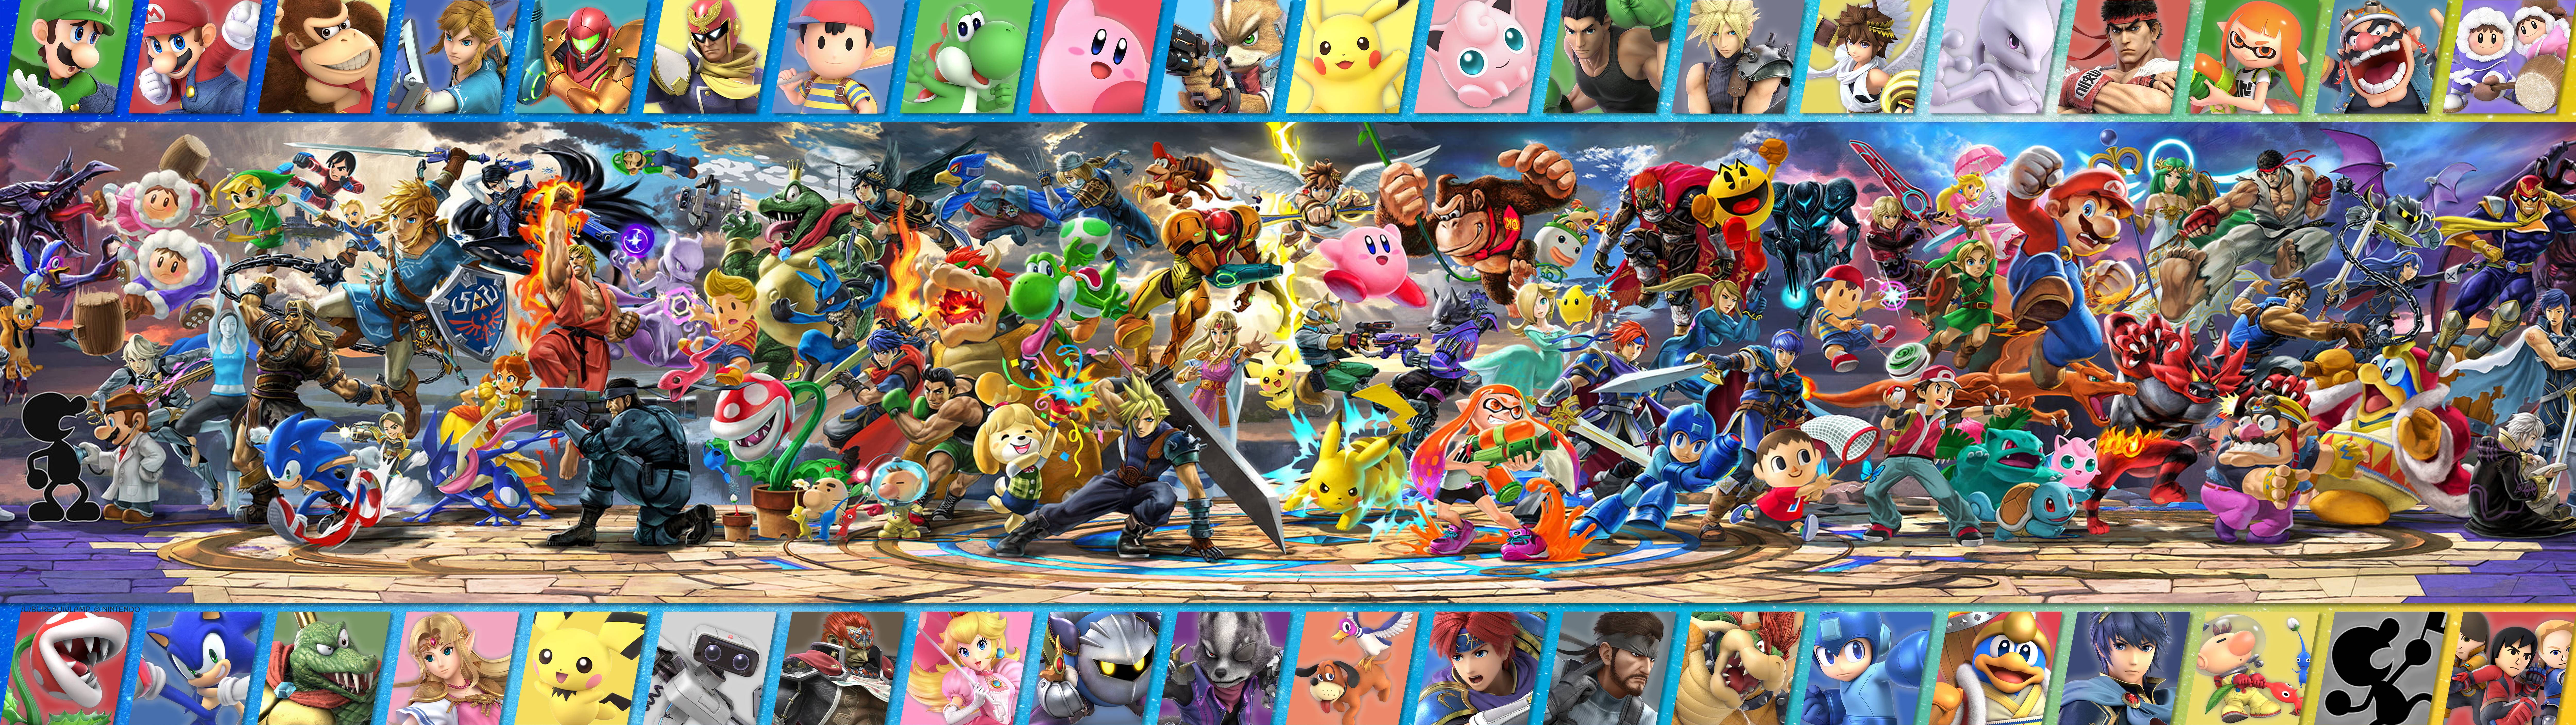 Super Smash Bros Ultimate Everyone Is Here Banjo - HD Wallpaper 